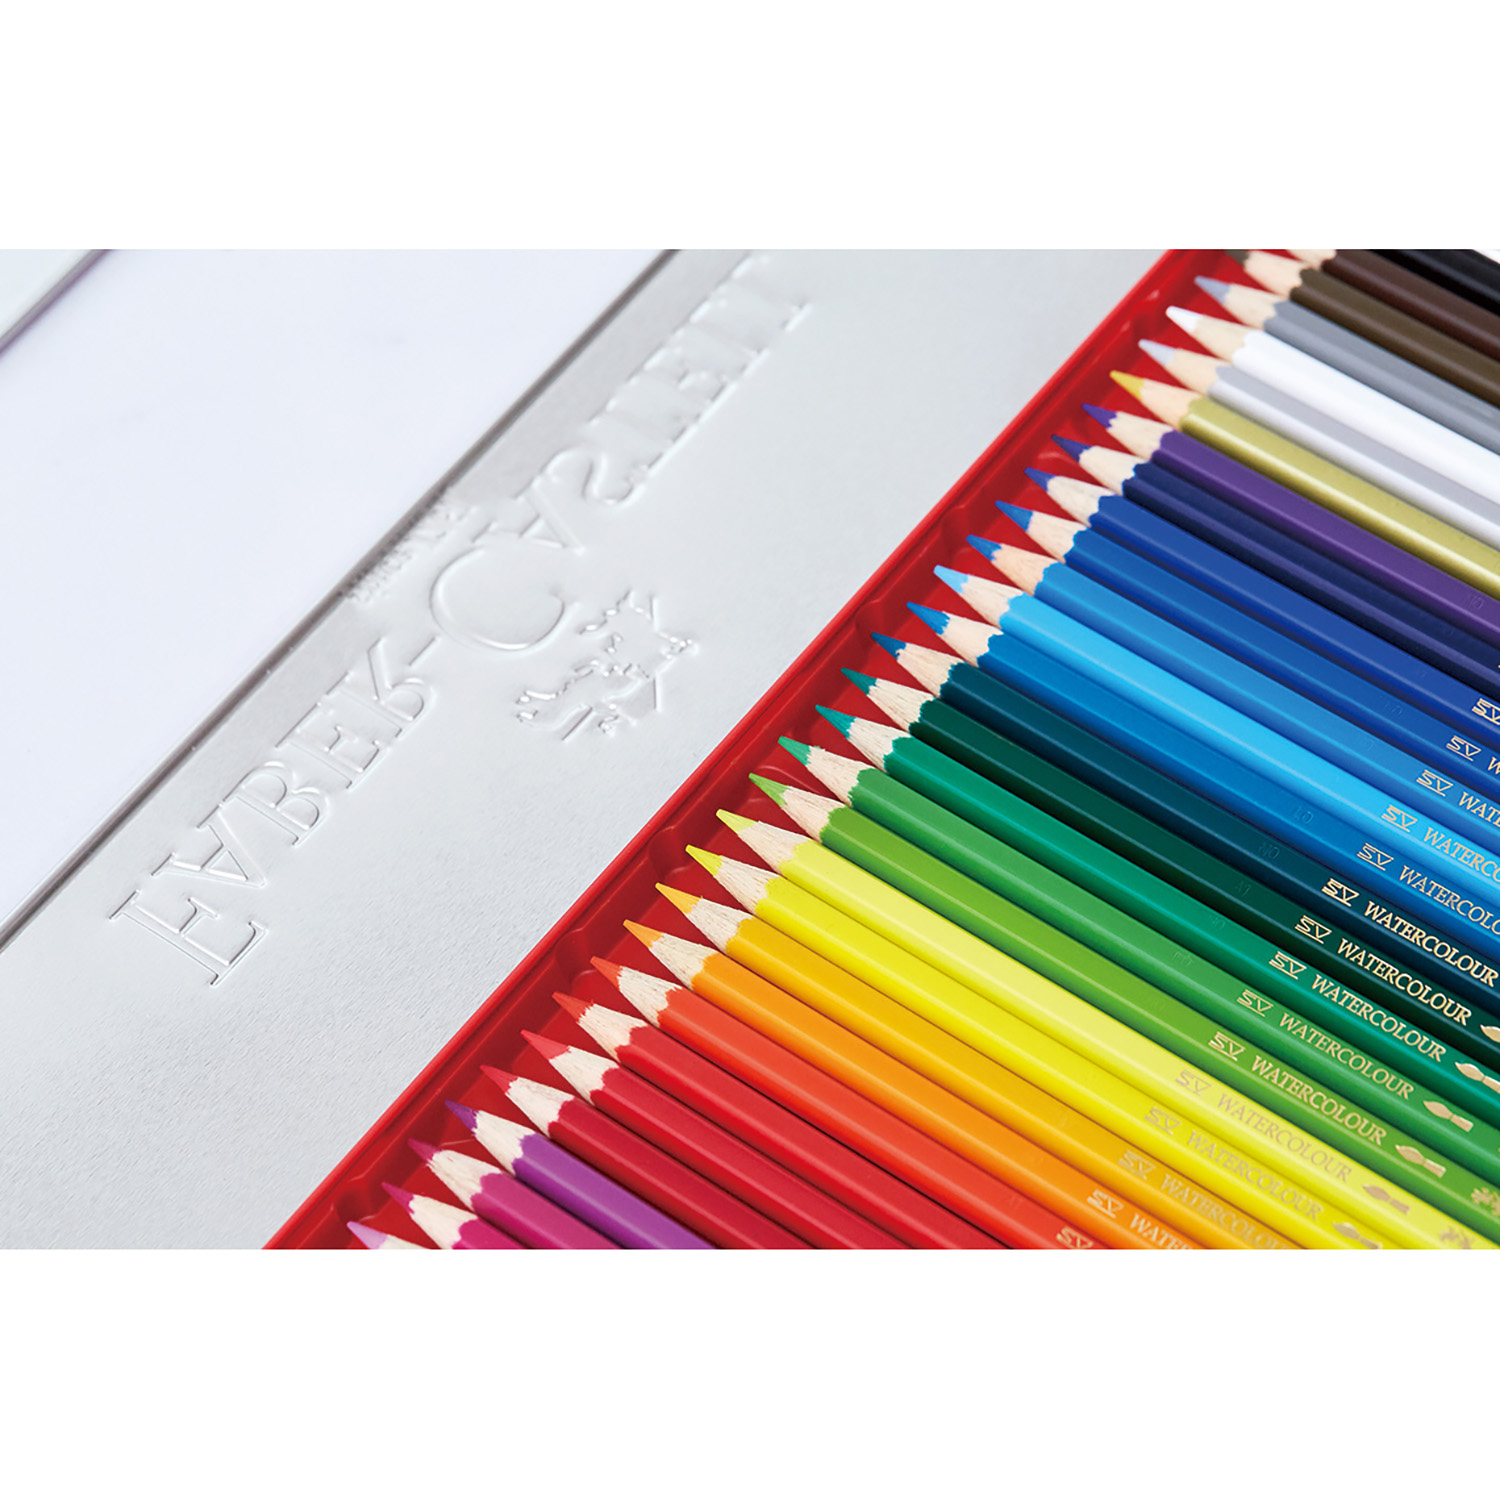 ファーバーカステル 色鉛筆 60色セット|TFC-CP/60C|商品カタログ